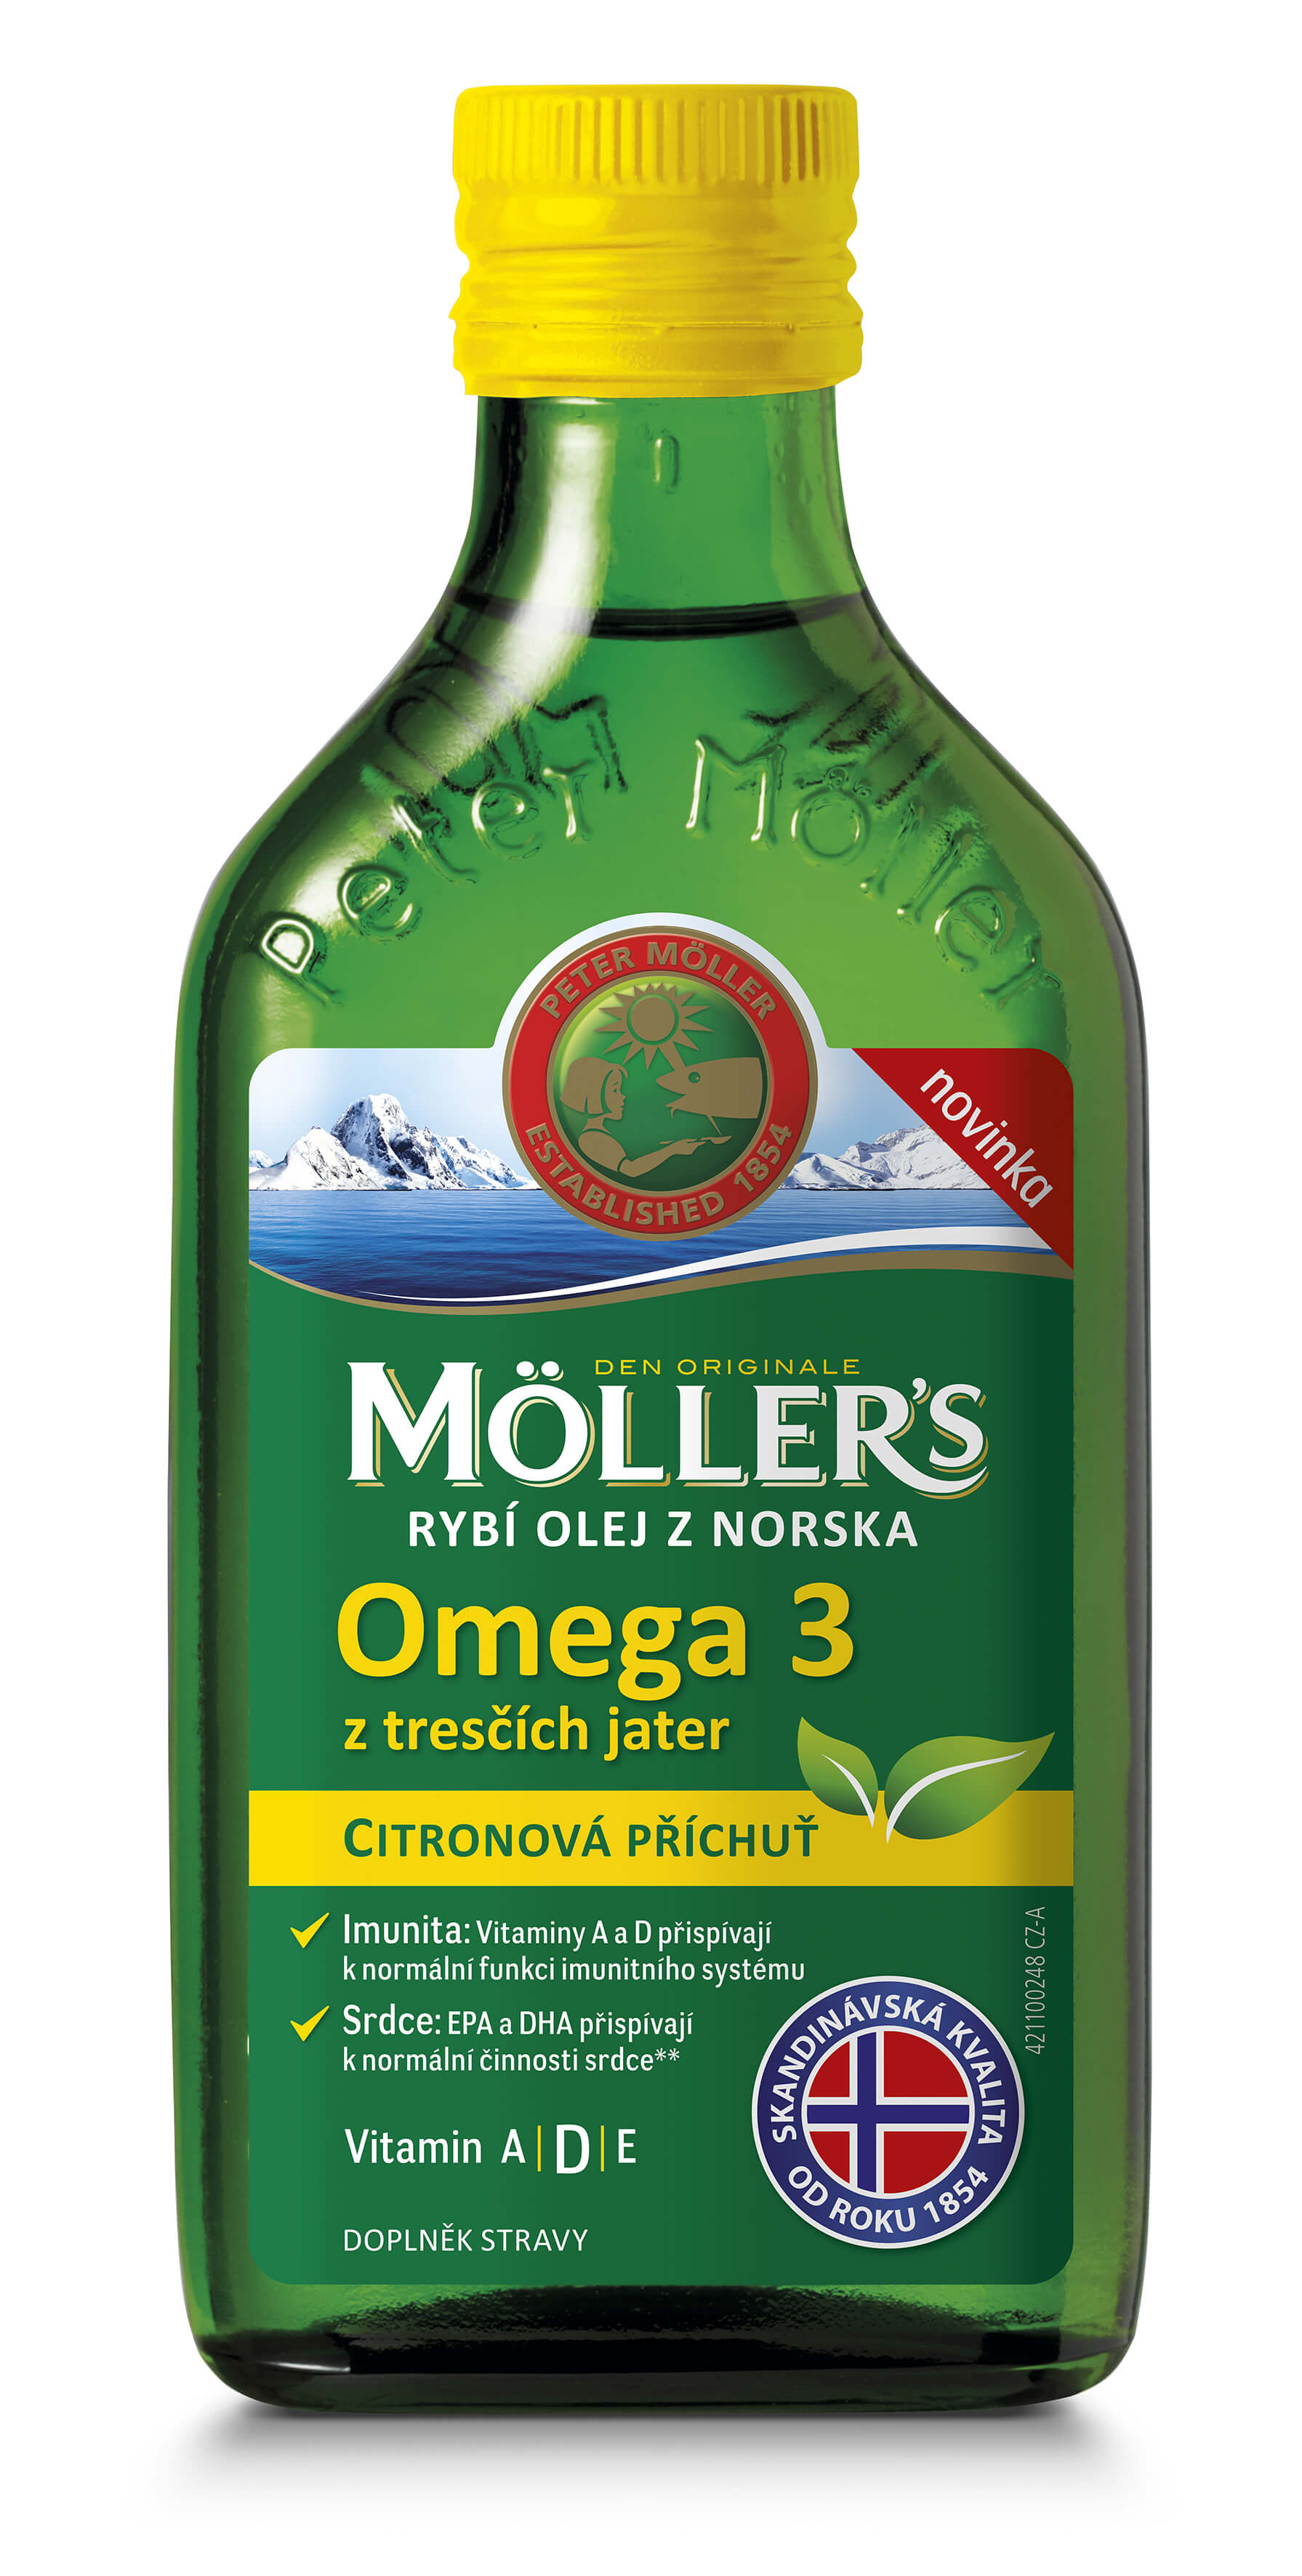 Möller´s Möller´s rybí olej Omega 3 z tresčích jater s citronovou příchutí 250 ml